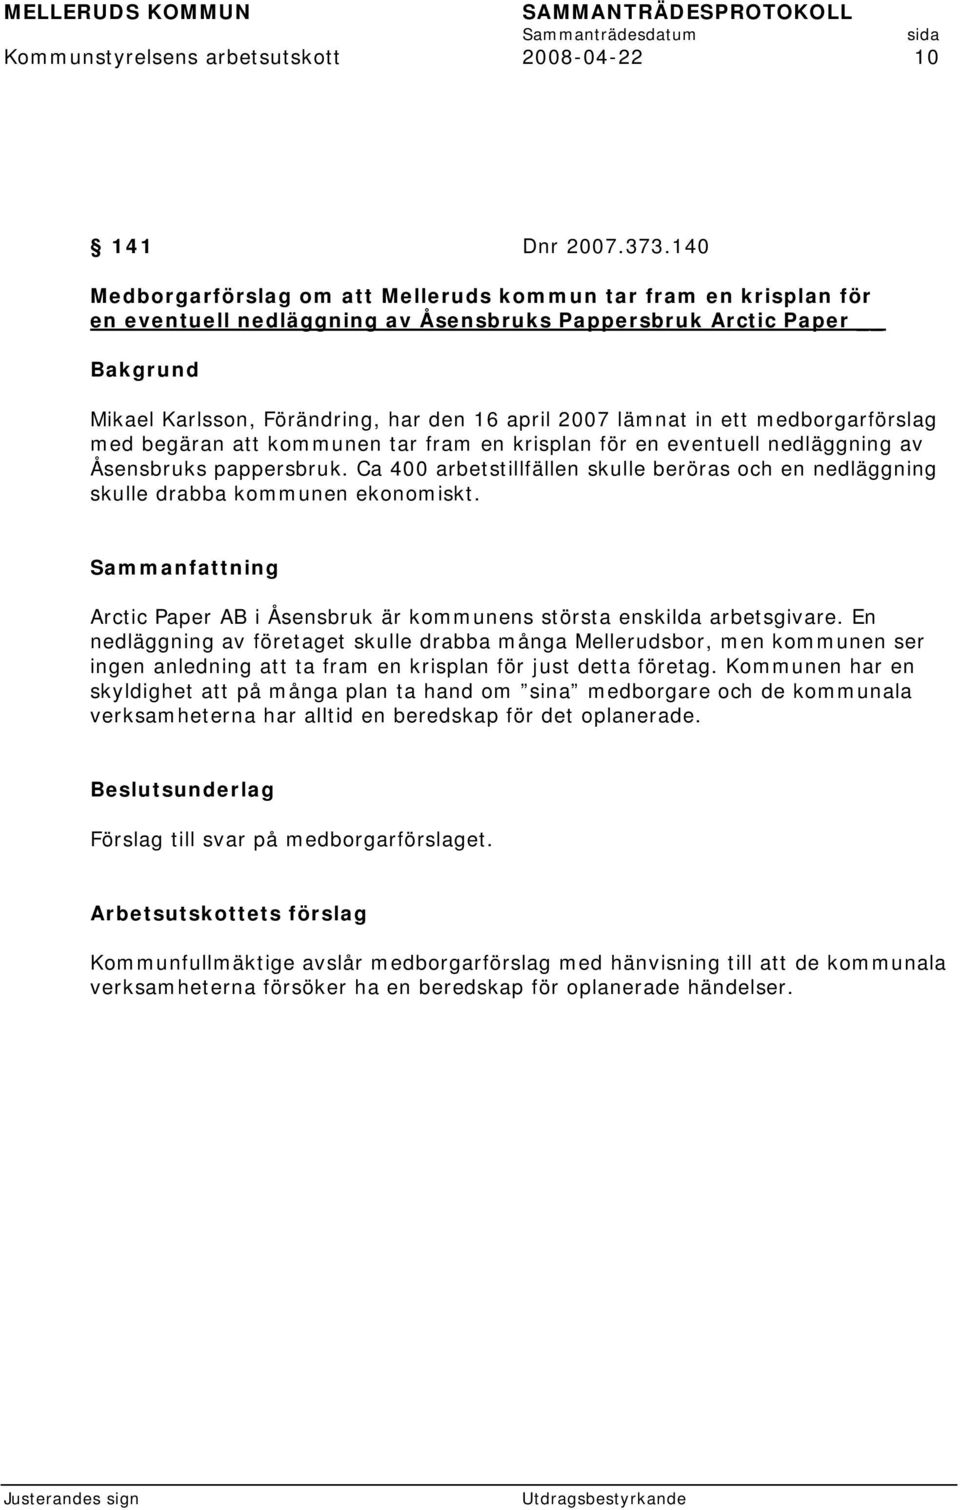 medborgarförslag med begäran att kommunen tar fram en krisplan för en eventuell nedläggning av Åsensbruks pappersbruk.